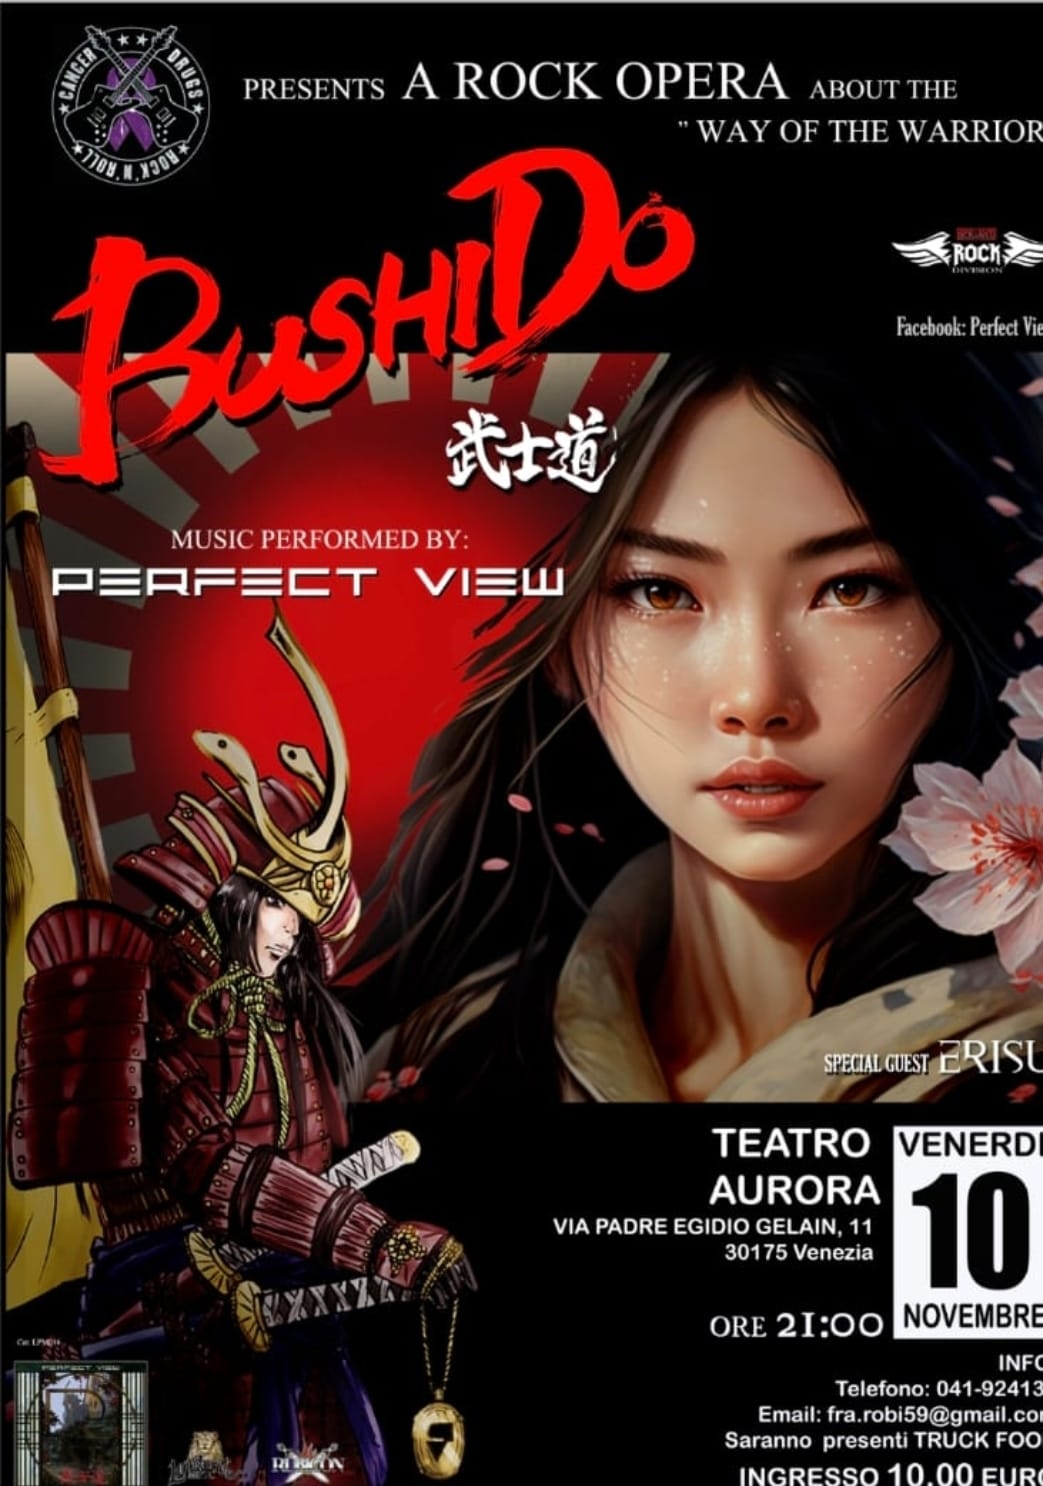 Al momento stai visualizzando Perfect View al Teatro Aurora di Marghera con la rock opera teatrale “Bushido”